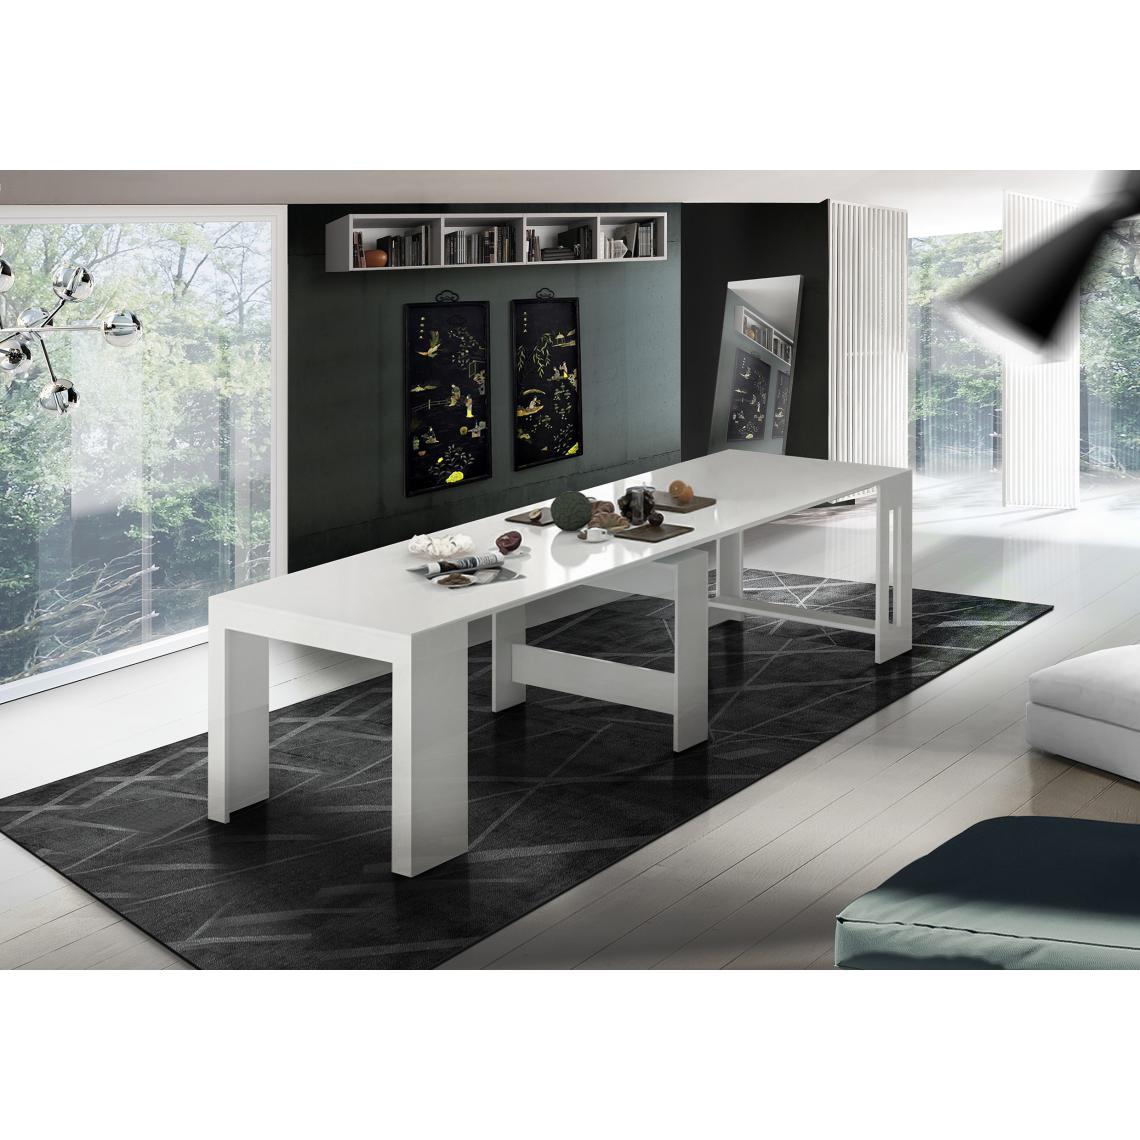 Alter - Table à manger moderne, Made in Italy, Console extensible jusqu'à 12 places, avec support d'extension, 51x90h77 cm (jusqu'à 300 cm) couleur Blanc brillant - Tables à manger